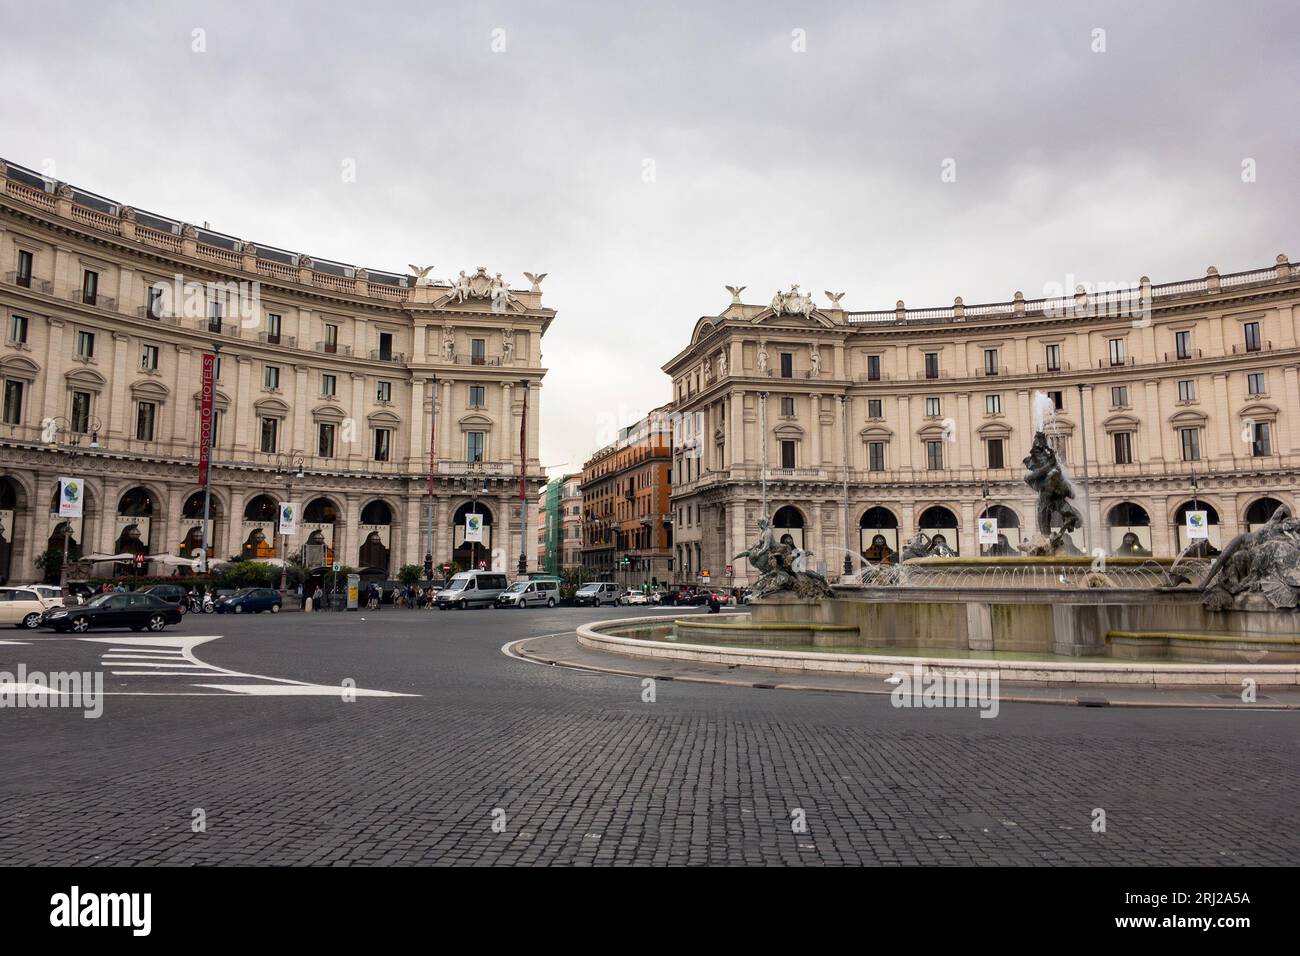 ROMA, ITALIA - 23 OTTOBRE 2016: Fontana delle Naiadi nel centro di Roma, italia con rotonda Foto Stock